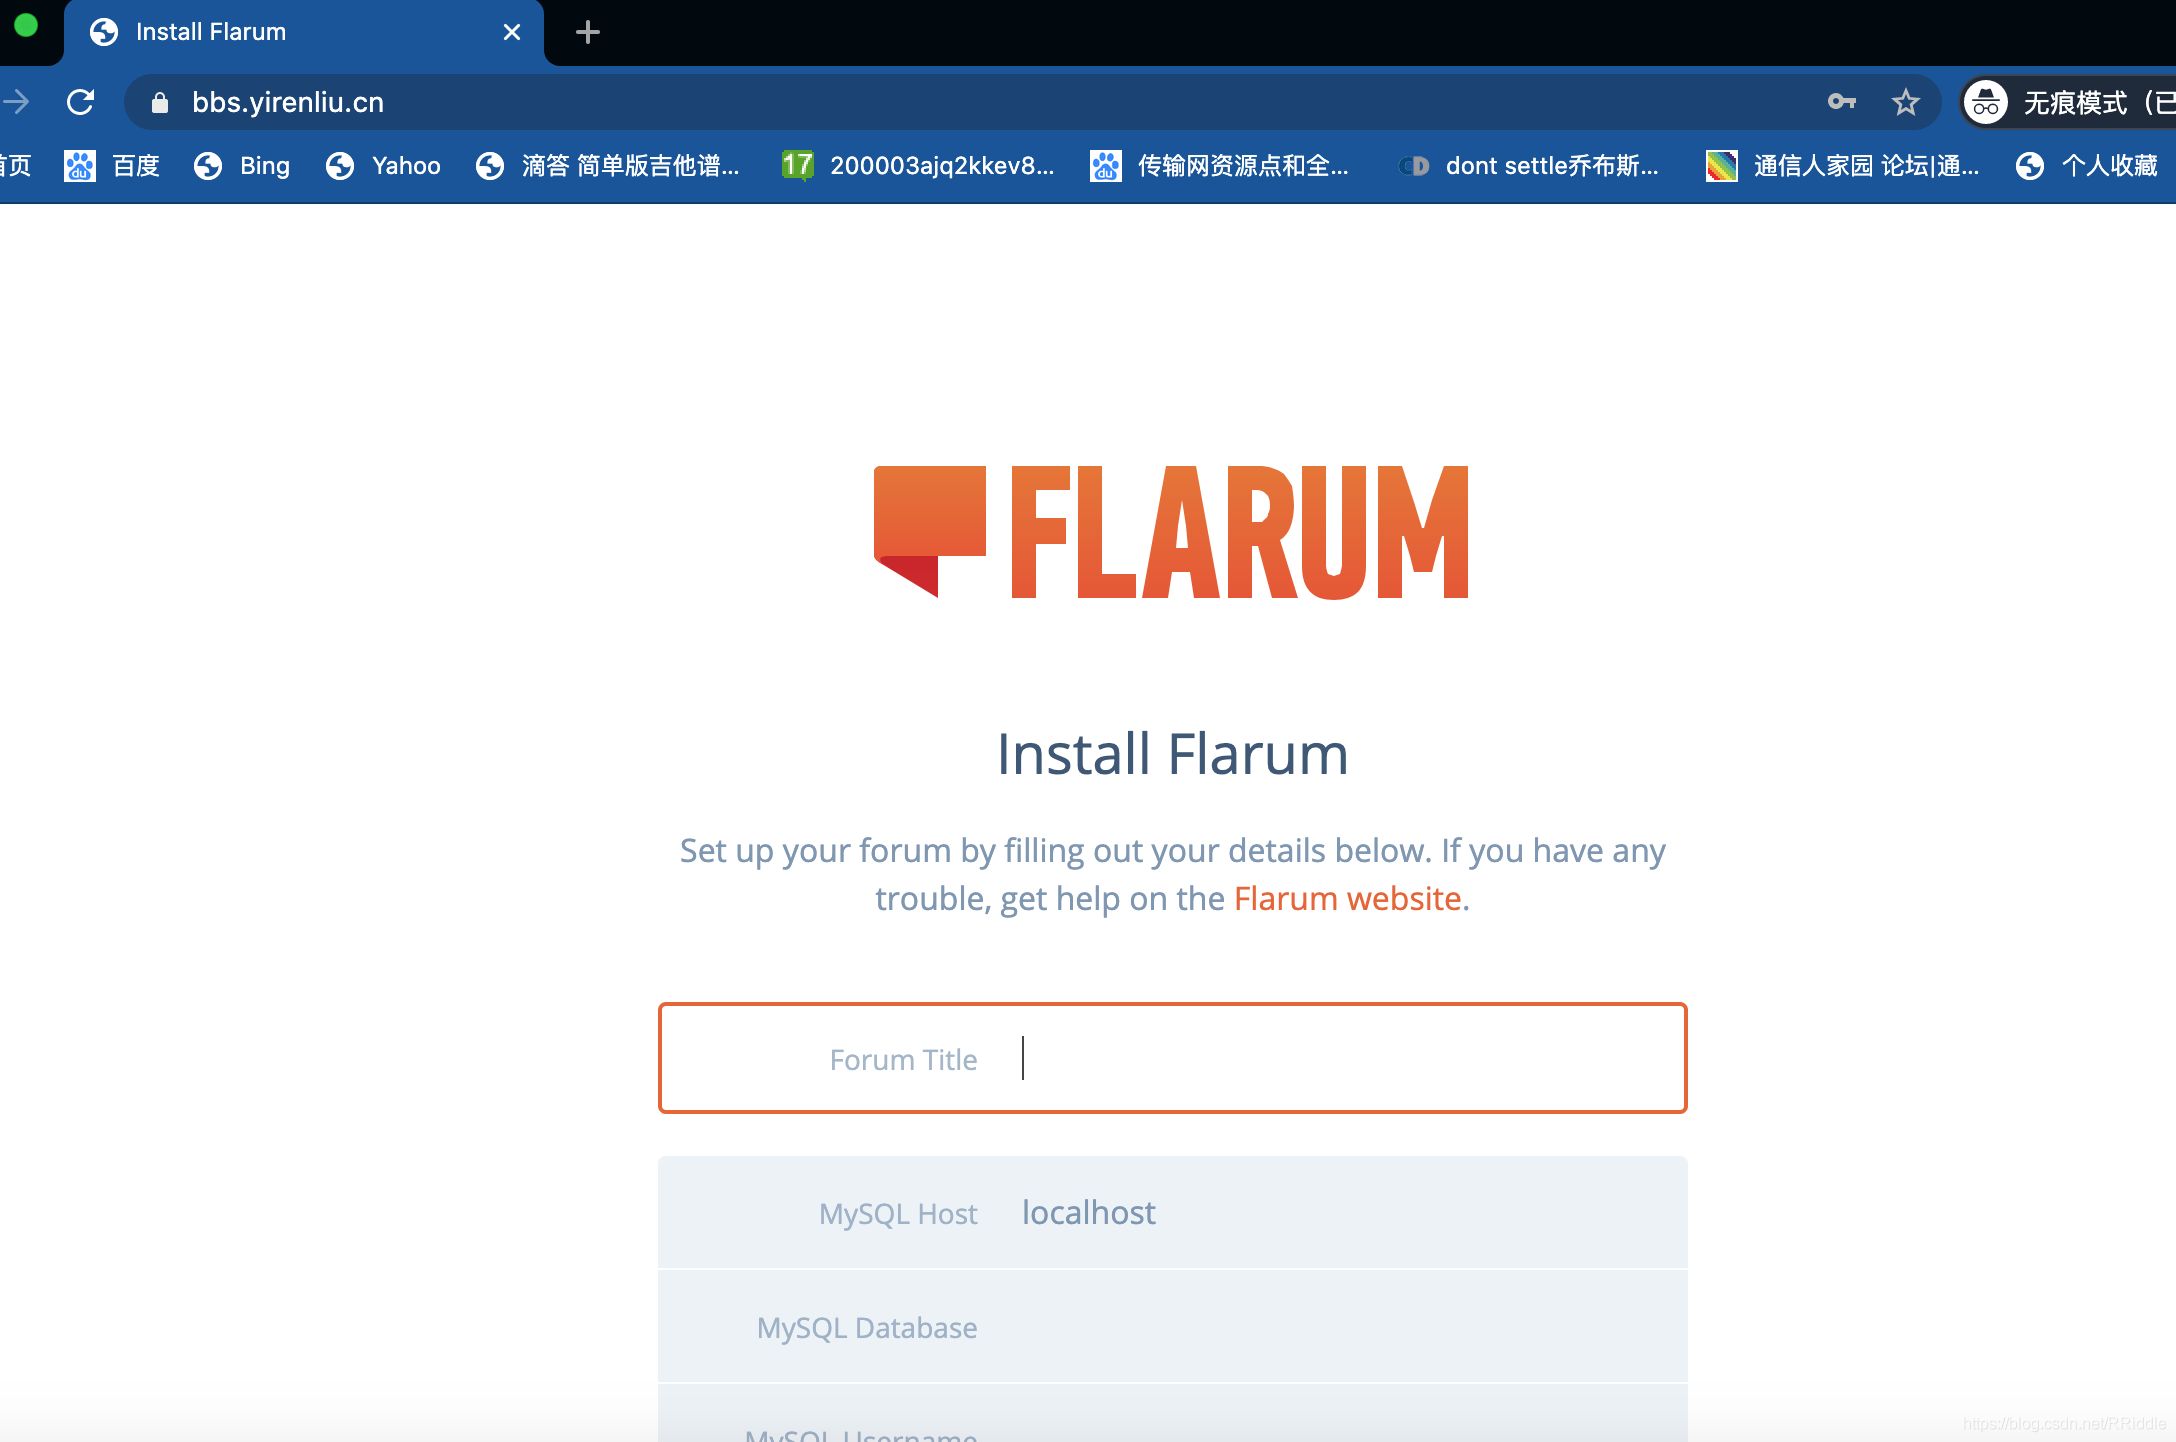 宝塔 Linux 面板安装一个高大上的论坛程序—— Flarum 